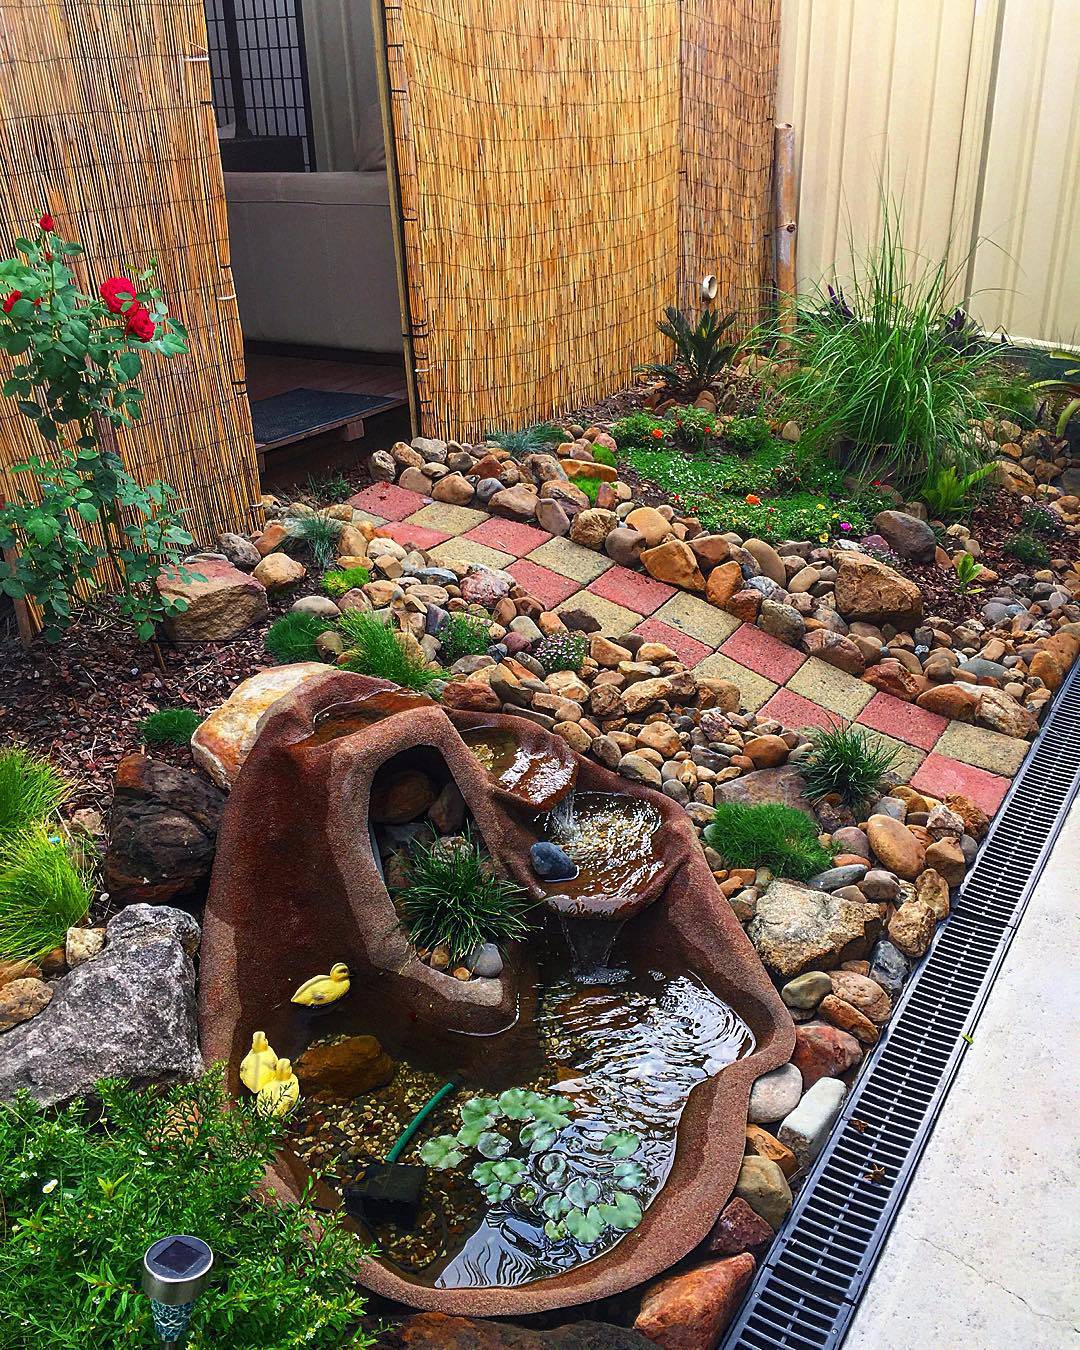 Simple Small Rock Garden Designs